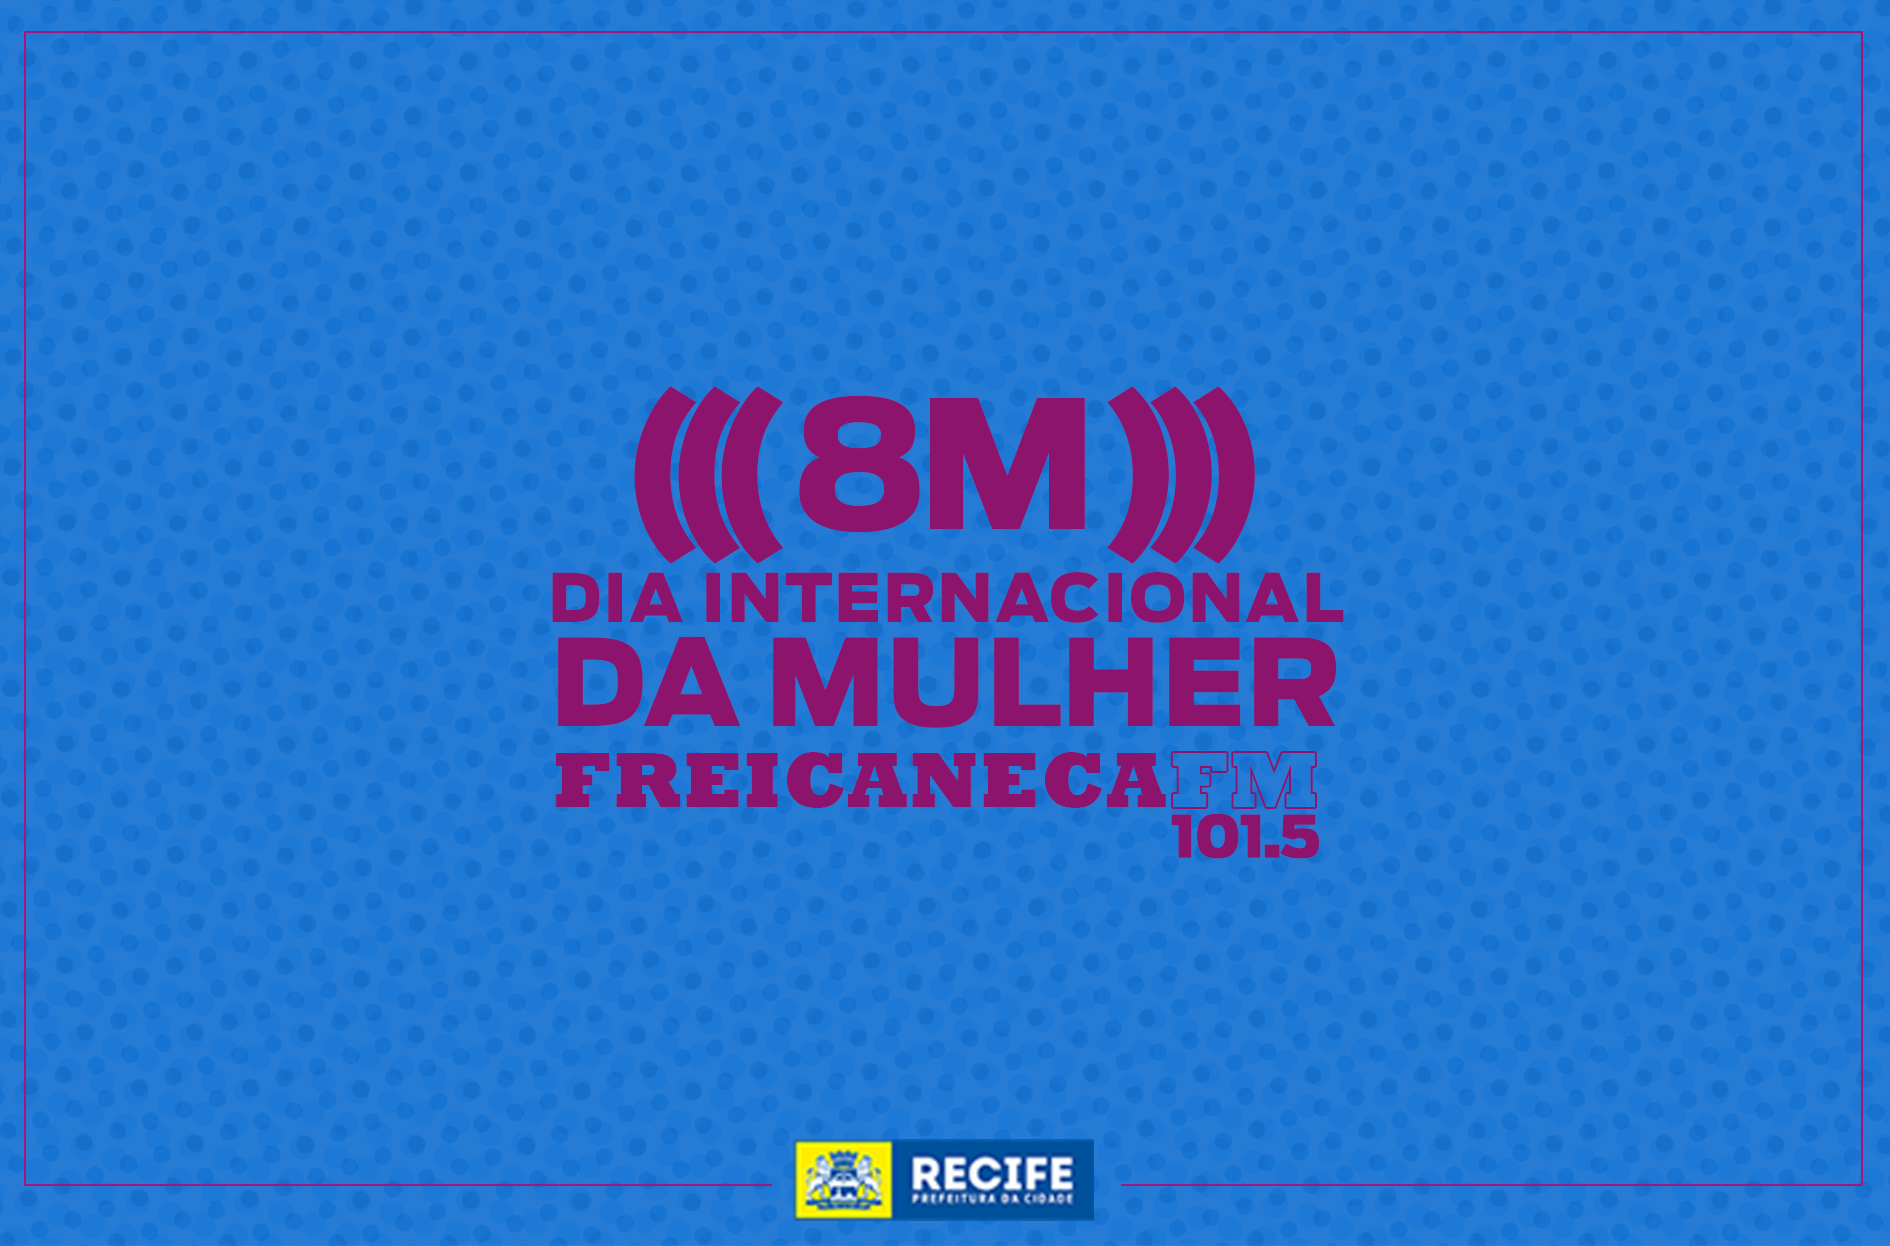 Imagem com fundo azul e letras rosas diz: "8M - Dia Internacional da Mulher - Frei Caneca FM 101.5 FM"